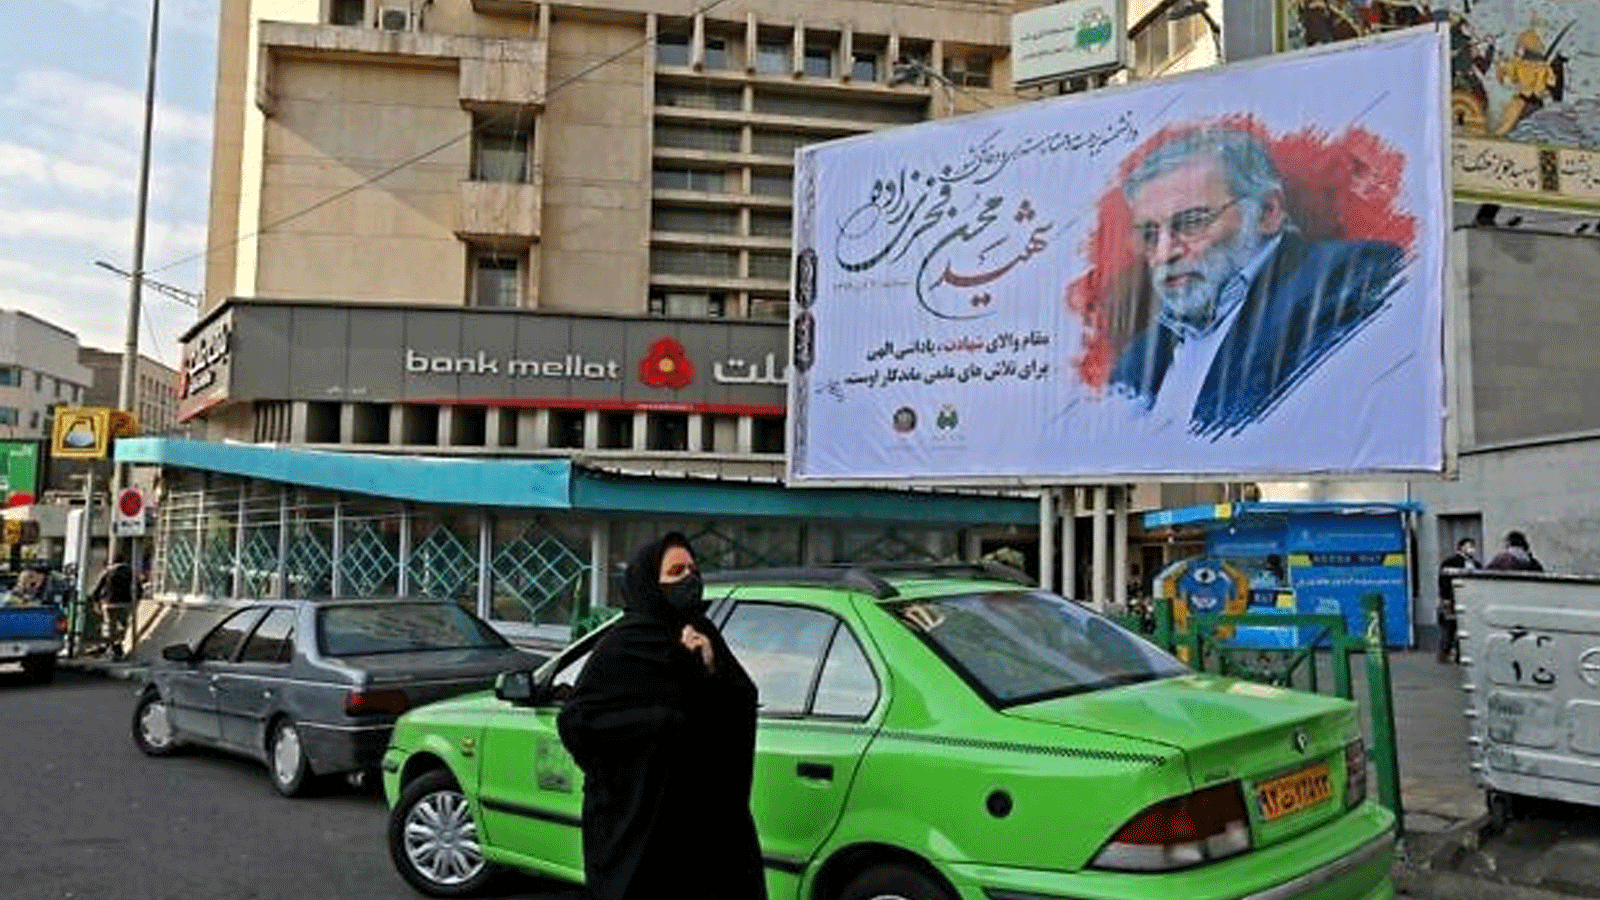 لوحة إعلانات تحمل صورة العالم النووي المقتول محسن فخري زاده في العاصمة الإيرانية طهران. 30 نشرين الثاني\نوفمبر 2020